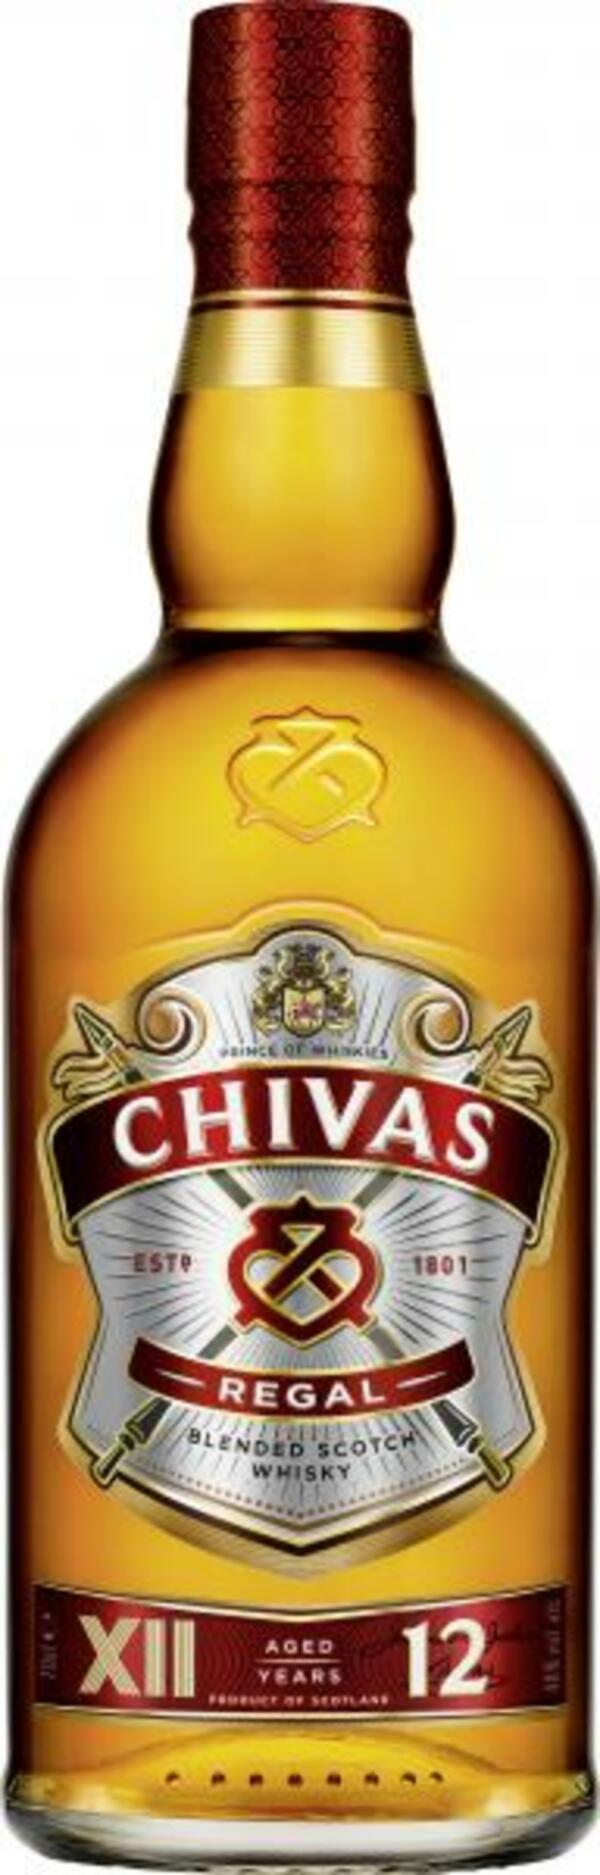 Bild 1 von Chivas Regal Blended Scotch Whisky 12 years